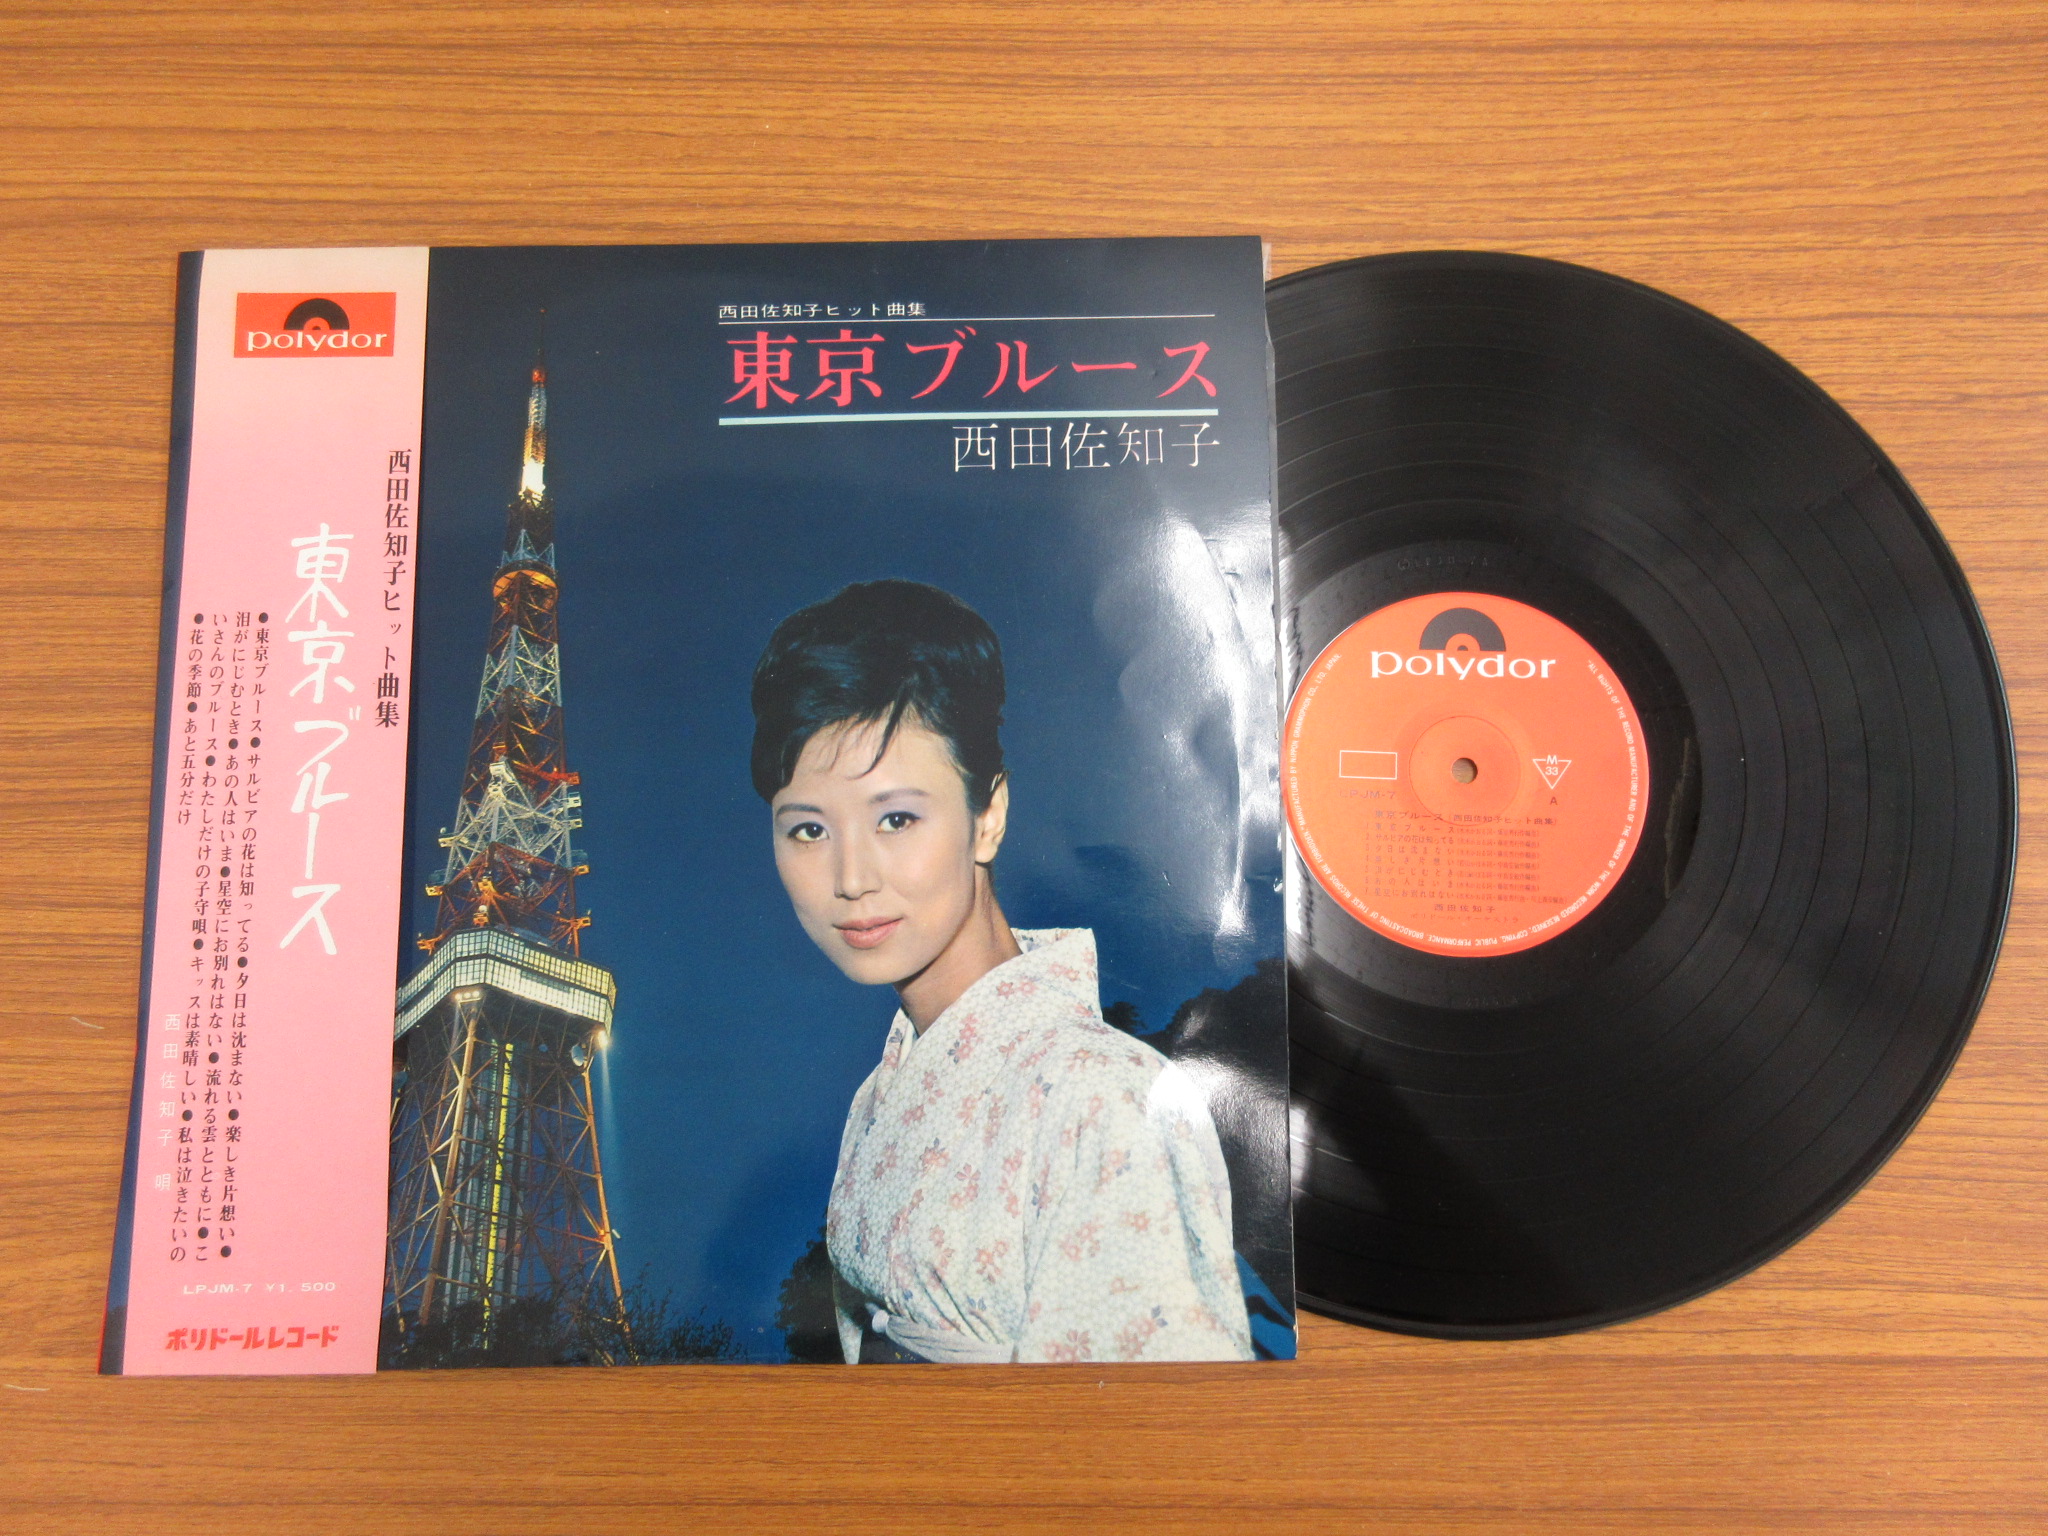 西田佐知子 LP さっちゃんのヒットアルバム、夢のアルバム、東京 